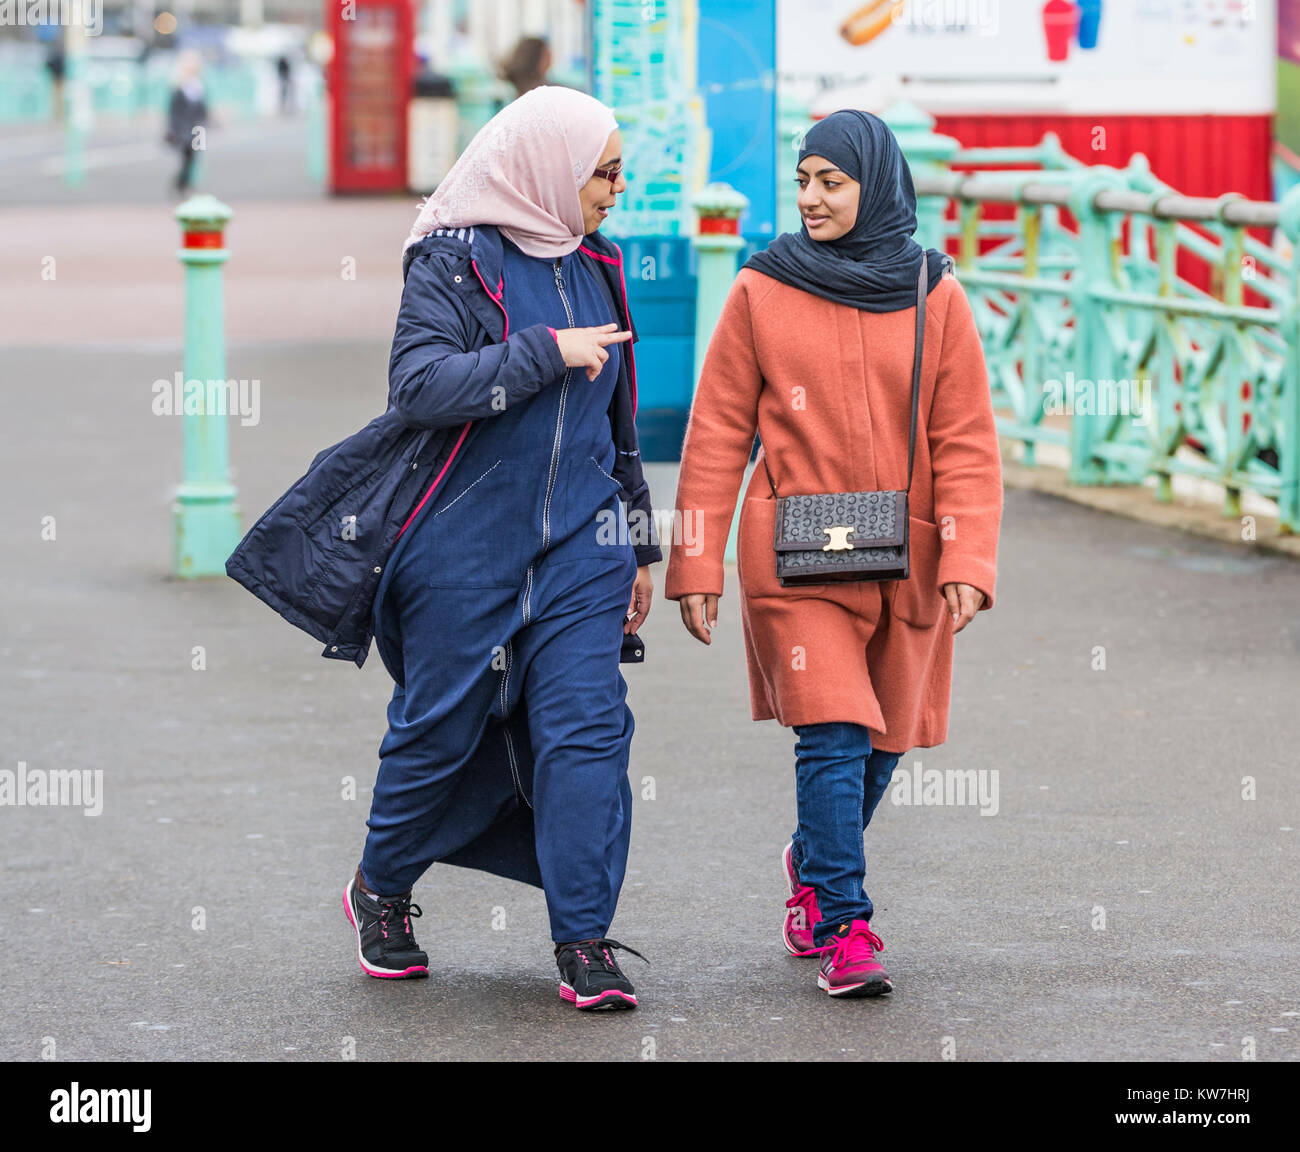 Zwei Frauen, wahrscheinlich Muslime aufgrund von Kleidung, die einen Hijab tragen, während sie in Brighton, East Sussex, England, Großbritannien, sprechen. Stockfoto